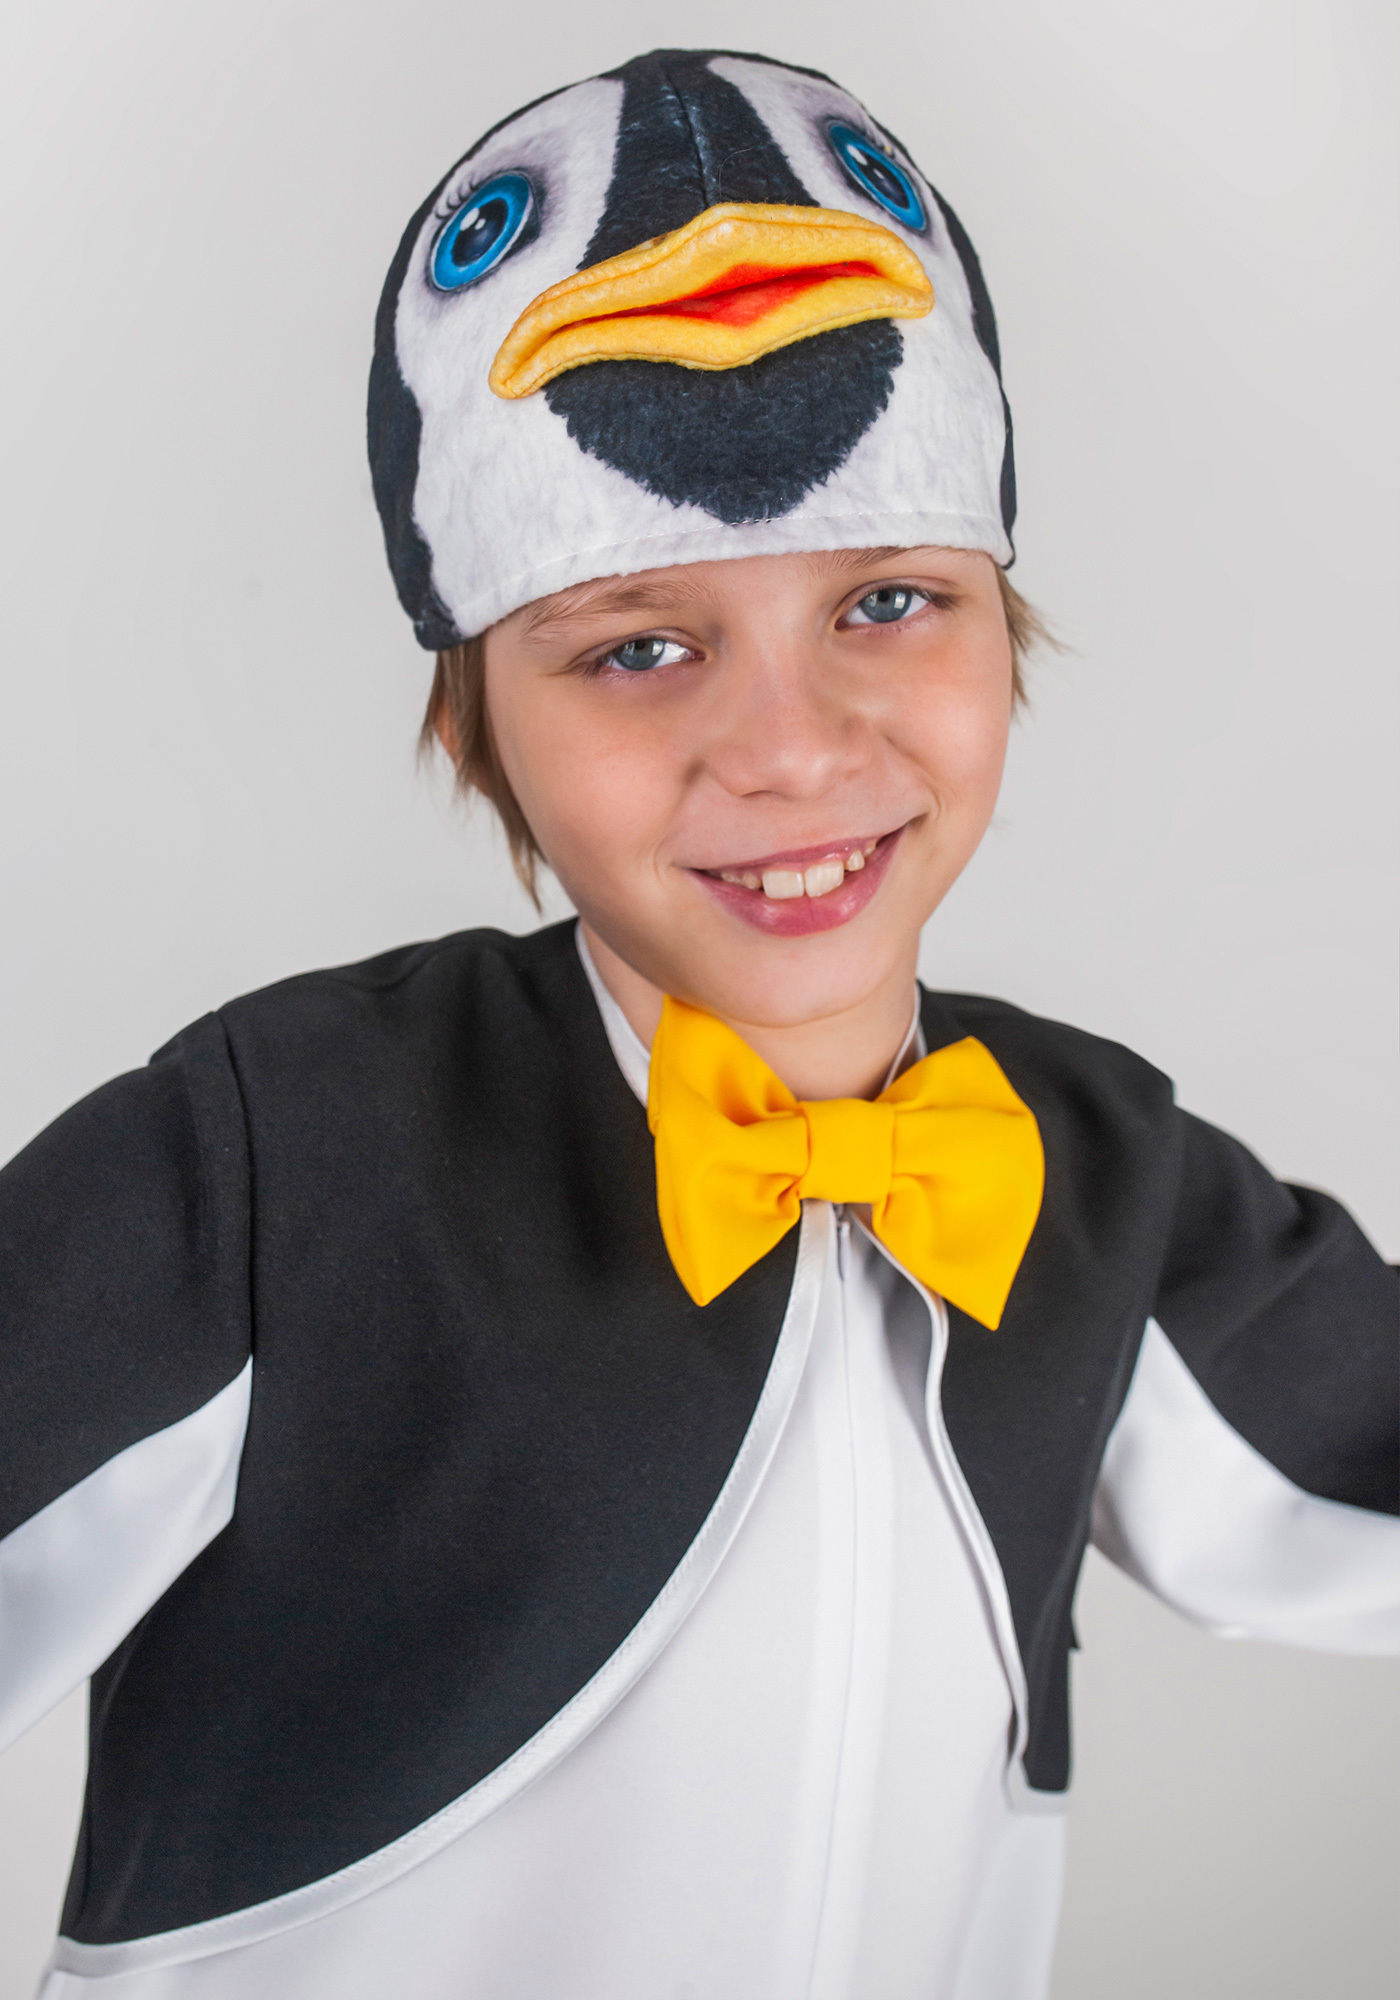 Костюмы пингвина для детей